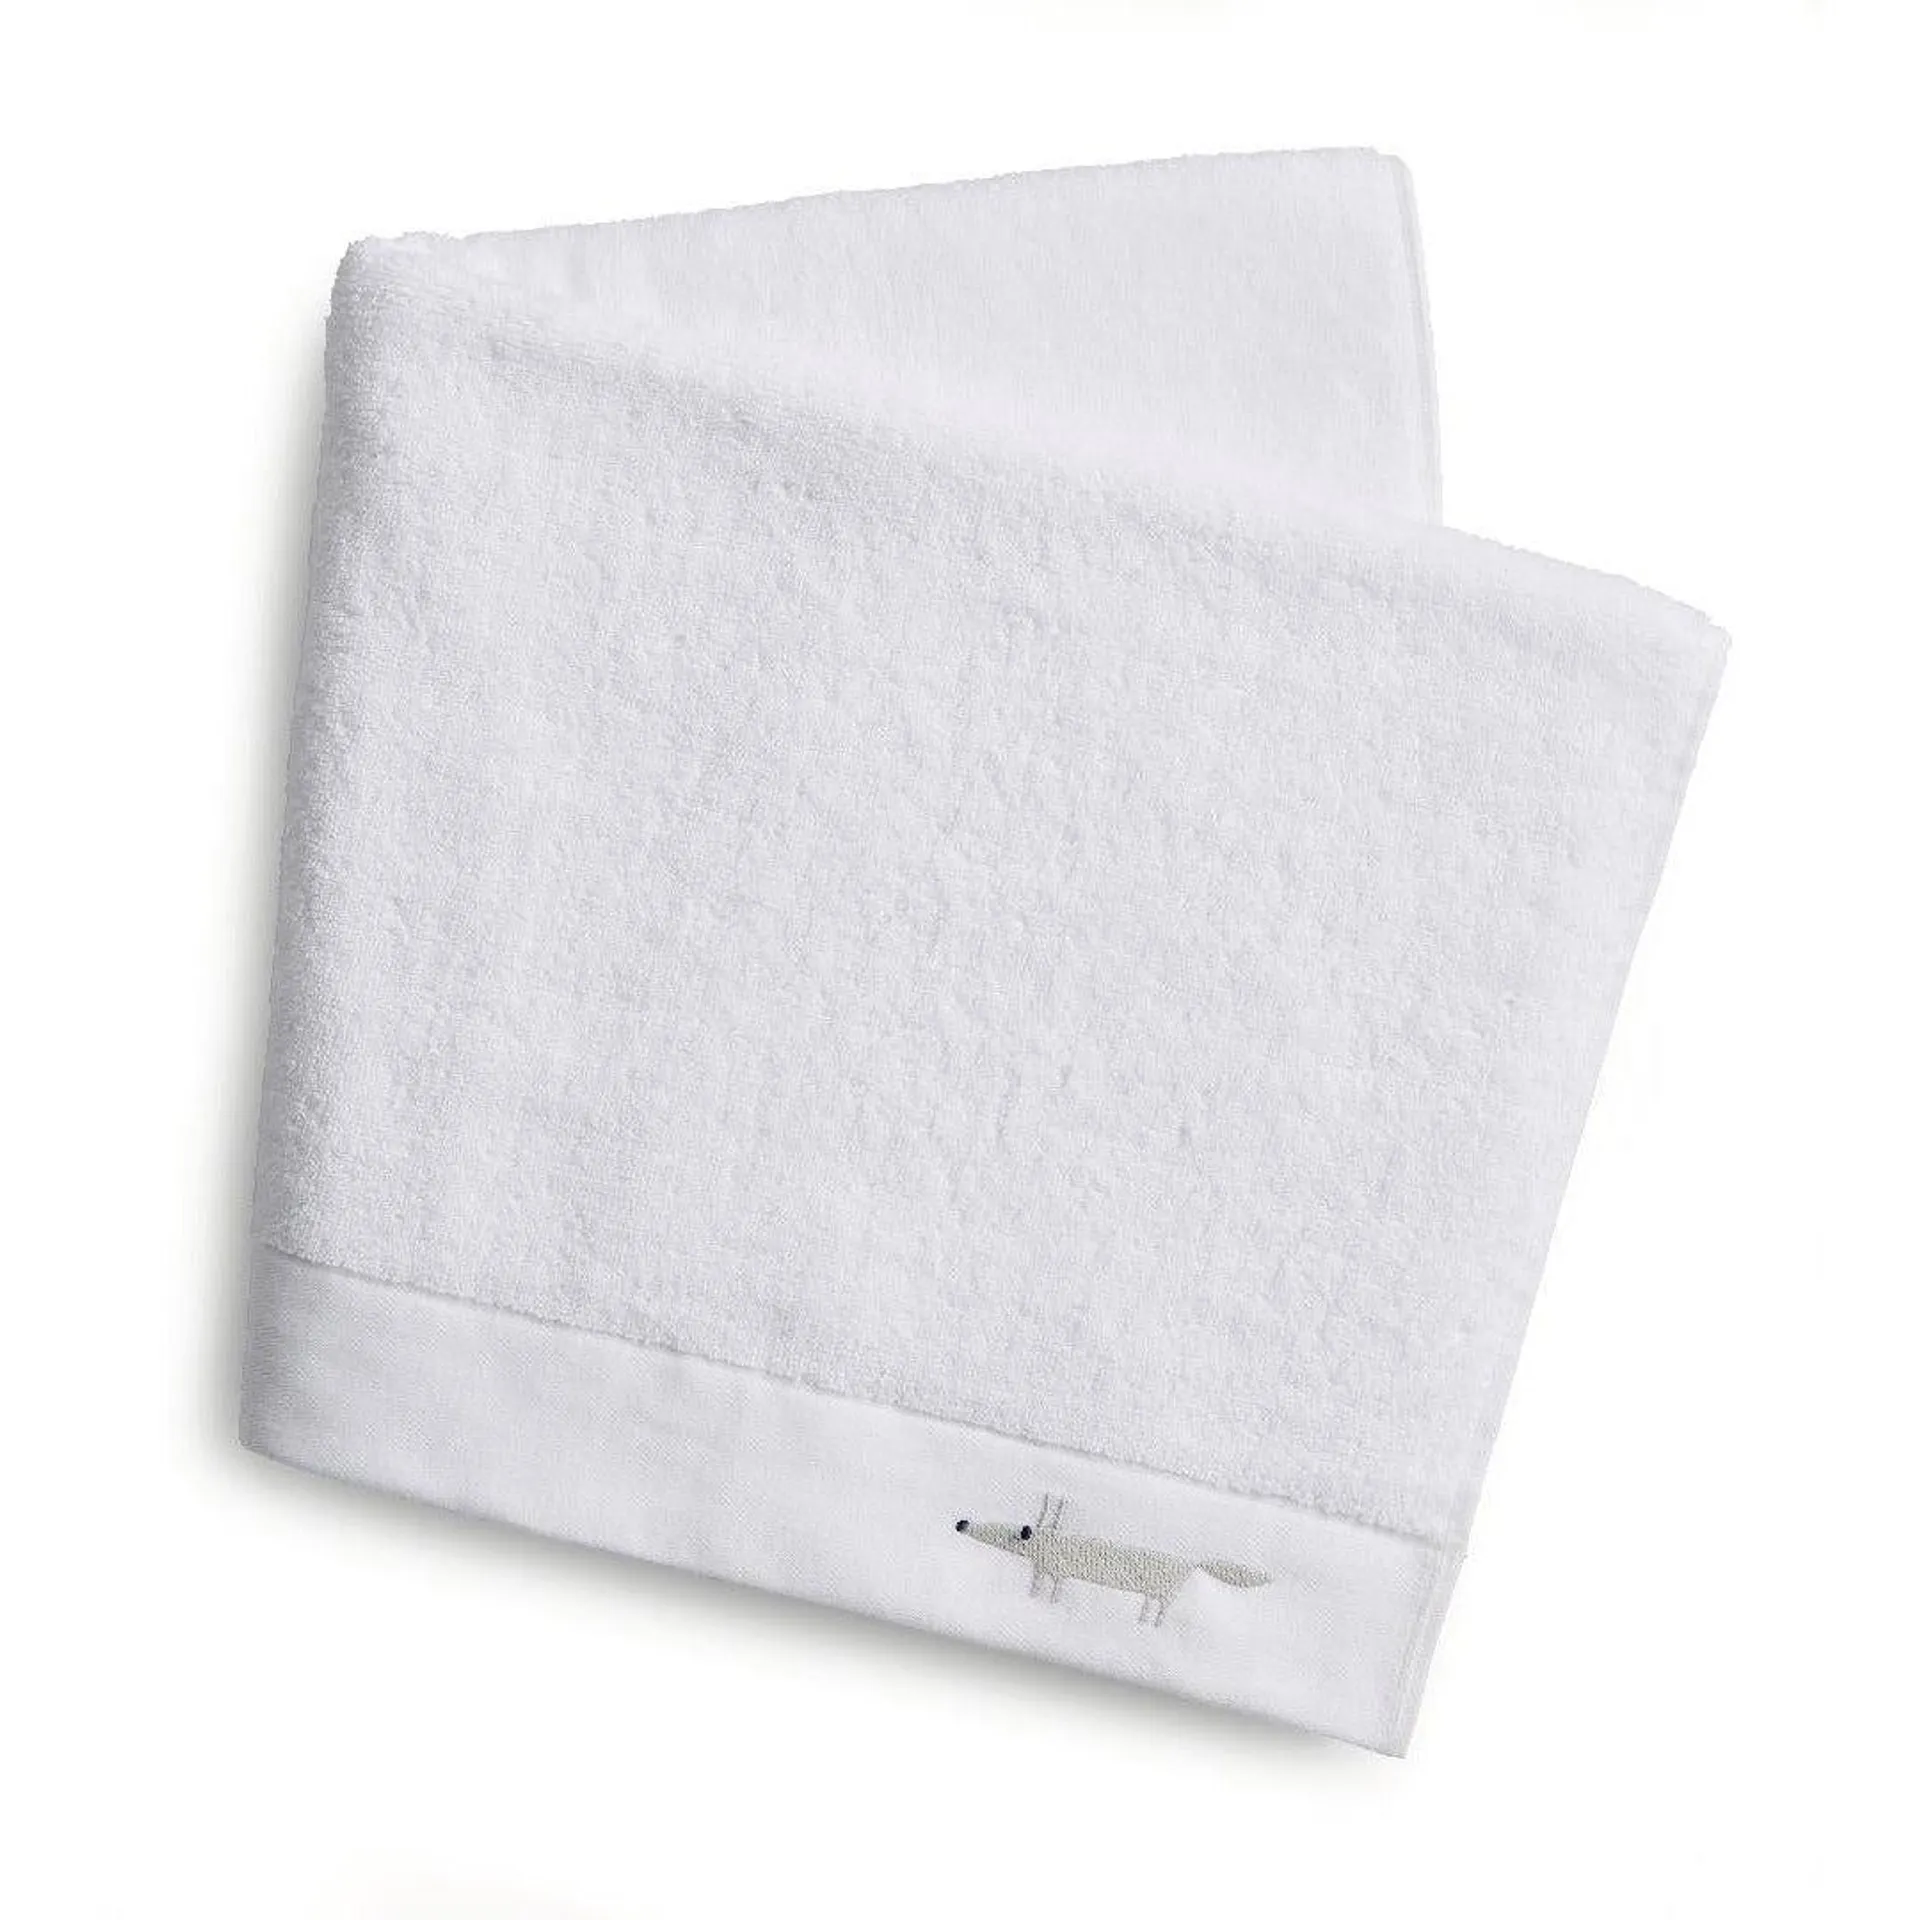 Scion Mr Fox Embroidered Towel - White